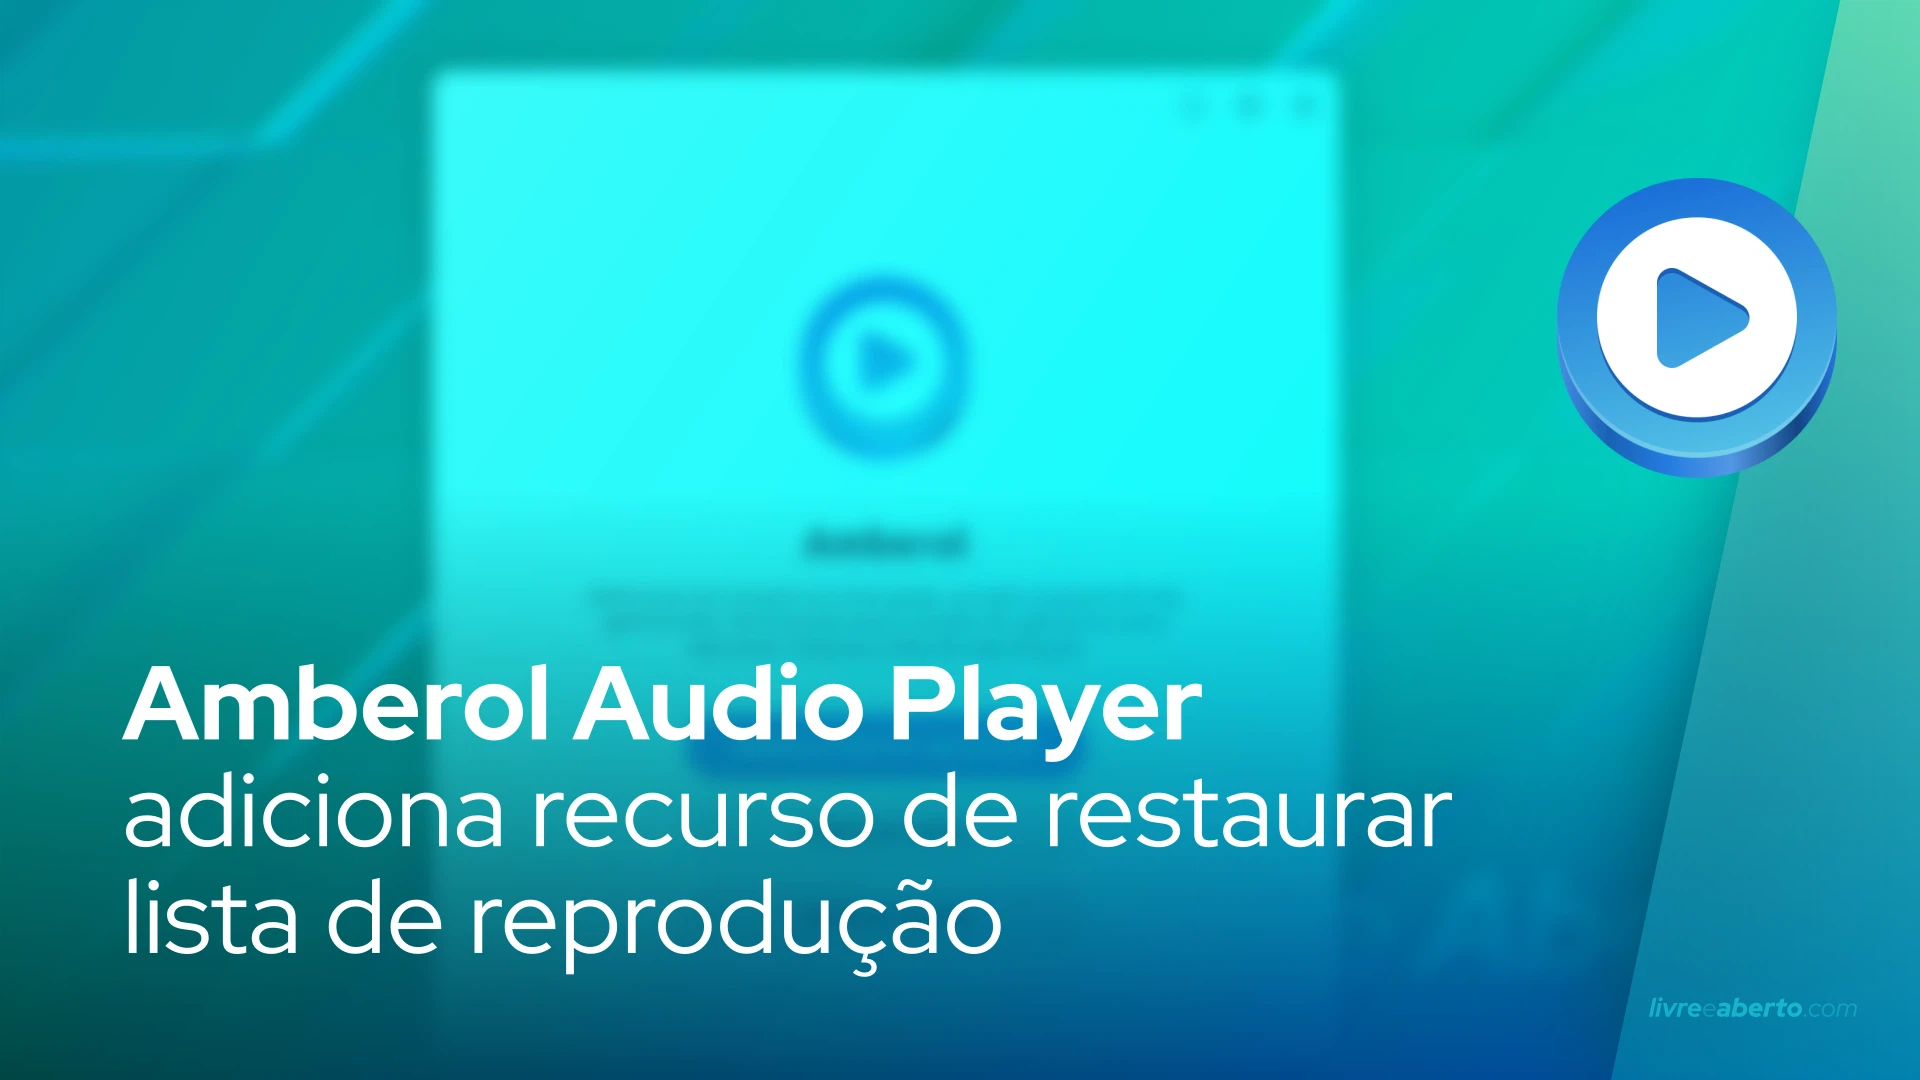 Amberol Audio Player adiciona recurso de restaurar lista de reprodução